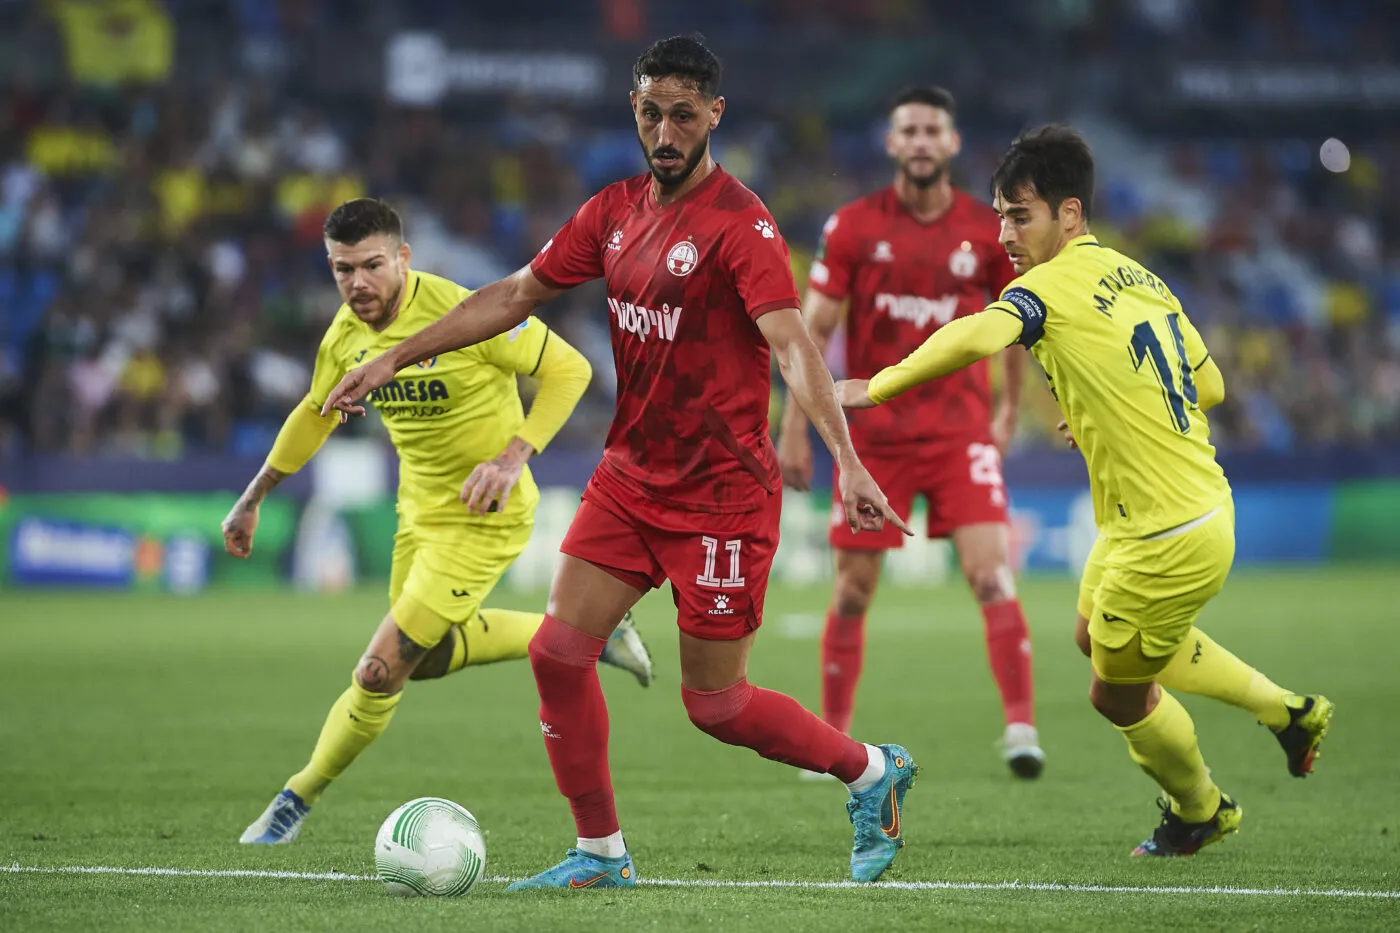 Le footballeur israélien suspendu en Turquie se défend